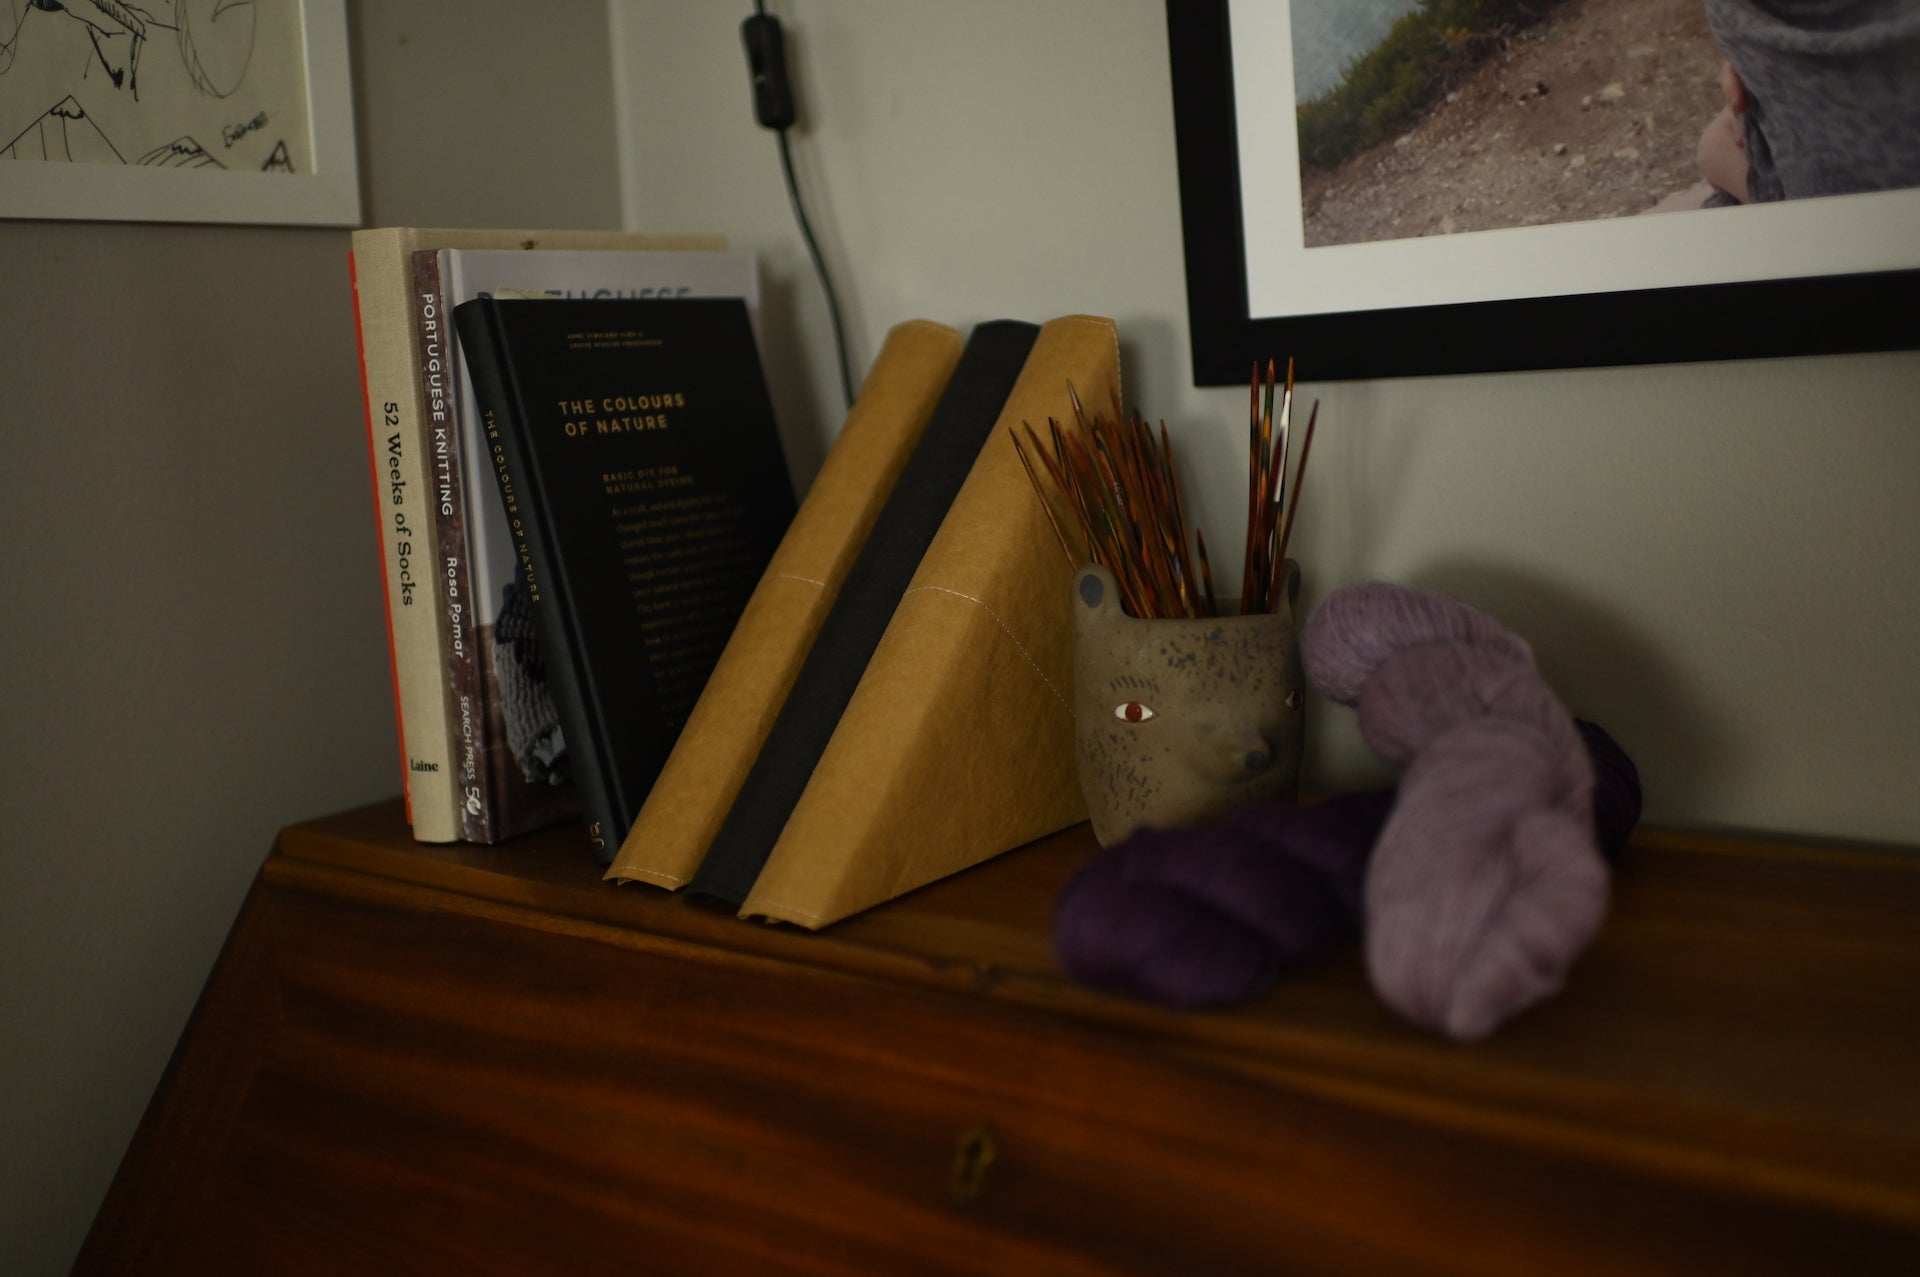 Rundstricknadeltasche ANWEN steht auf dem Sekretär neben Strick Bücher, Nadelspiele und Wolle